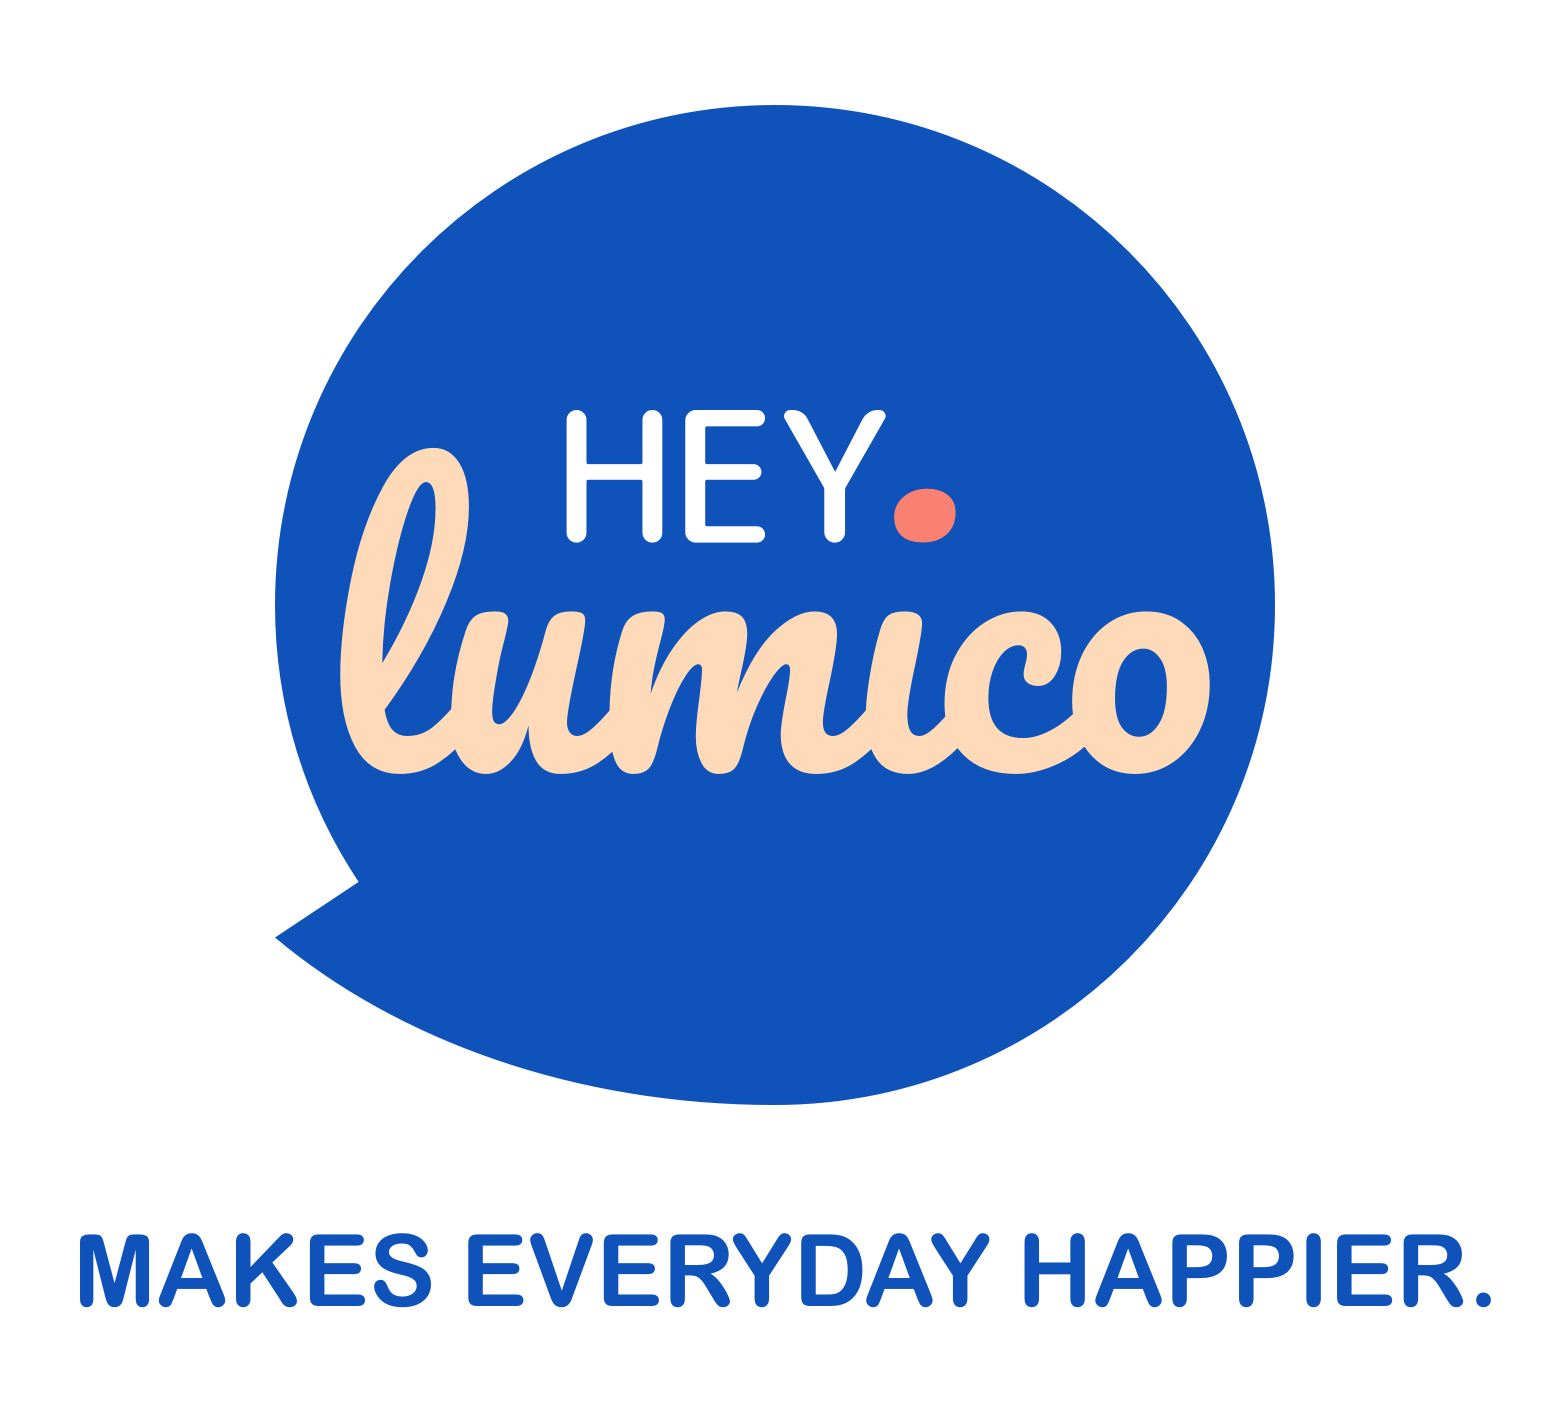 Logo von hey.lumico in der Farbe Kornblumenblau mit Claim MAKES EVERYTHING HAPPIER